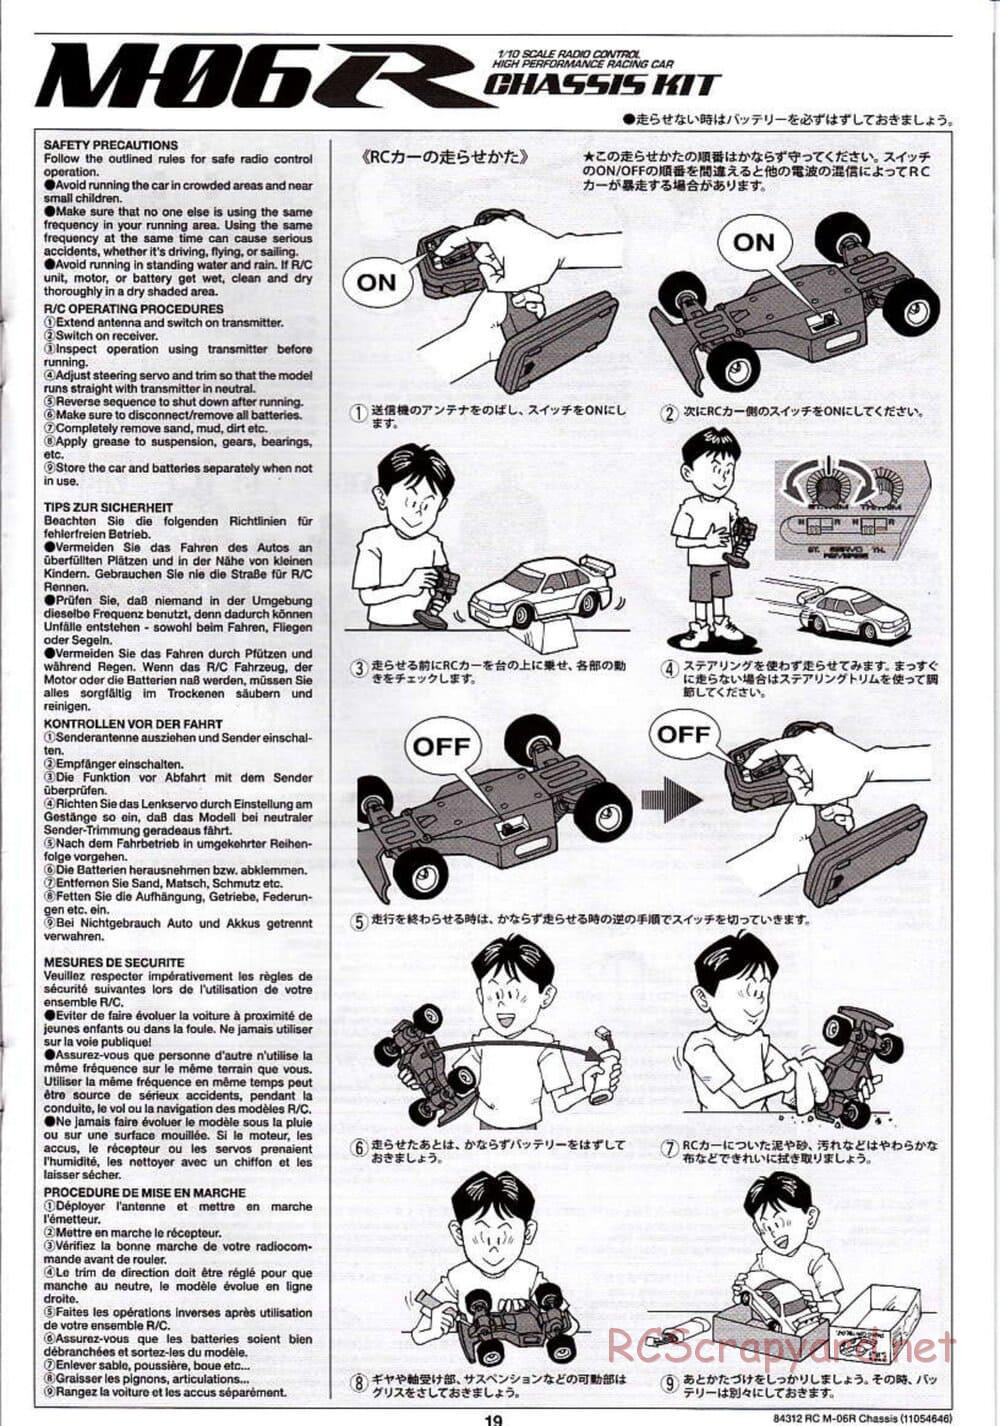 Tamiya - M-06R Chassis - Manual - Page 19